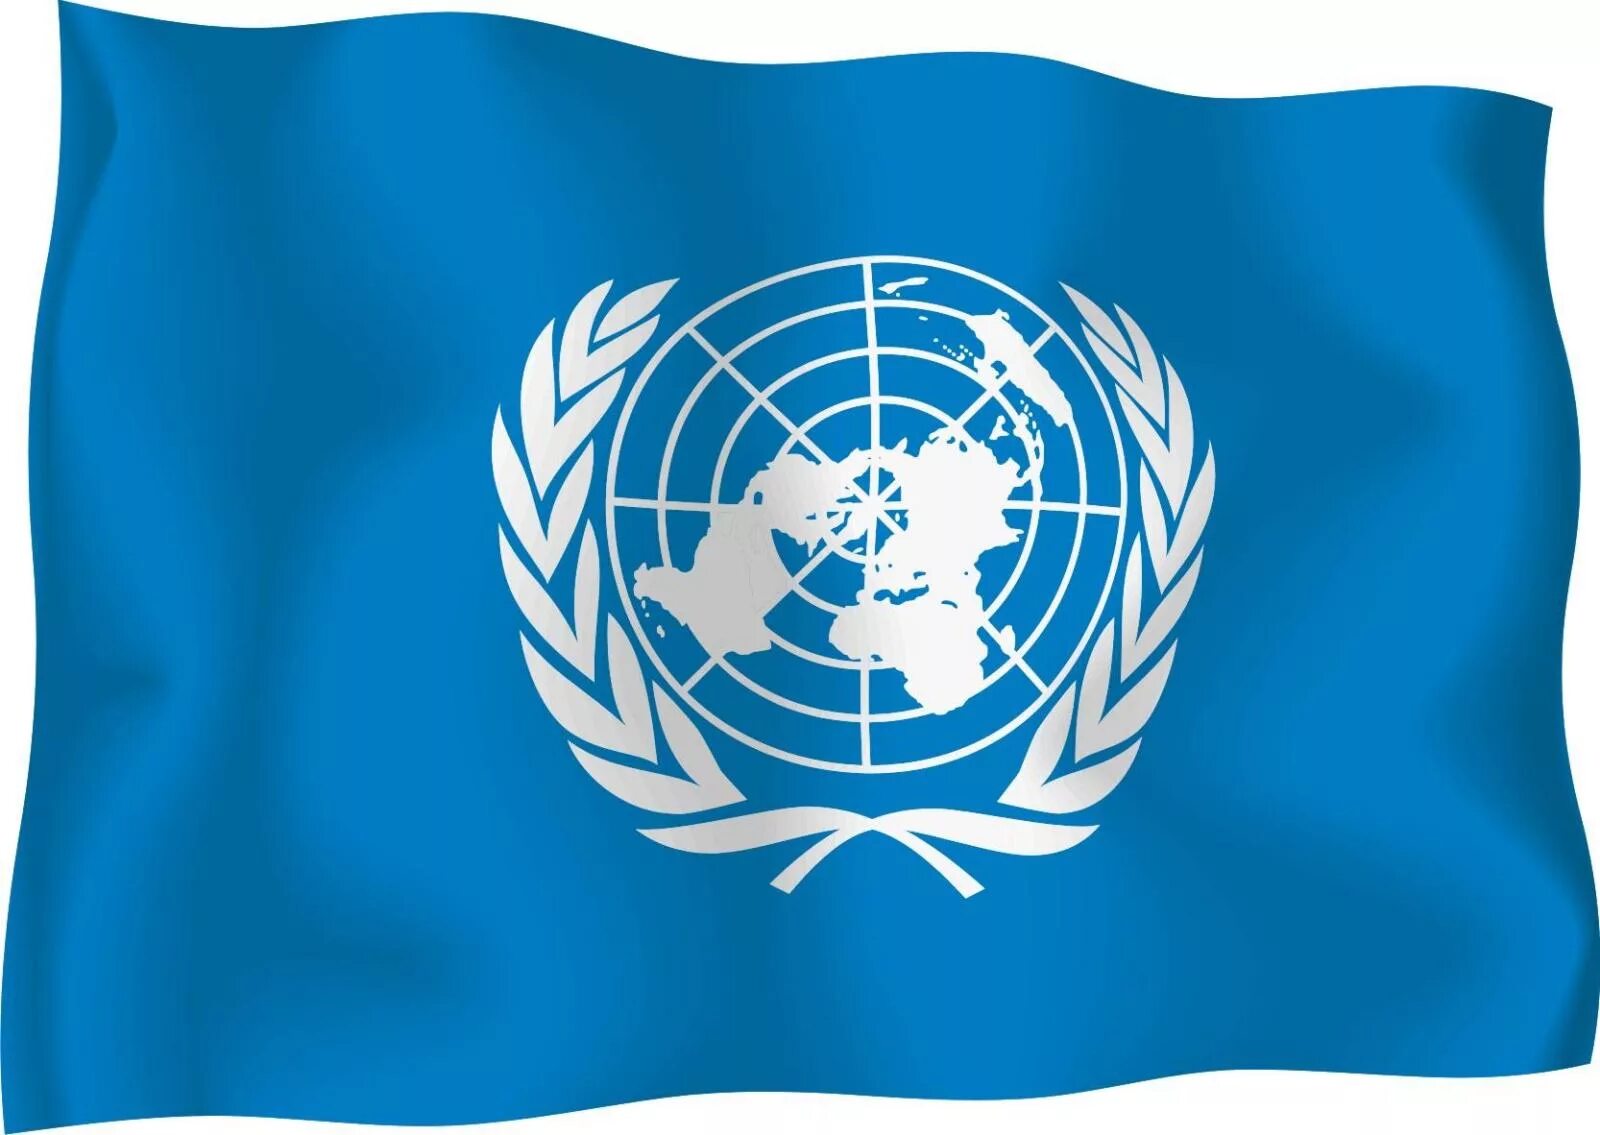 Кодекс оон. Организация Объединенных наций ООН флаг. Флаг флаг организации Объединенных наций. Флаг ООН флаг ООН. Международные организации ООН.